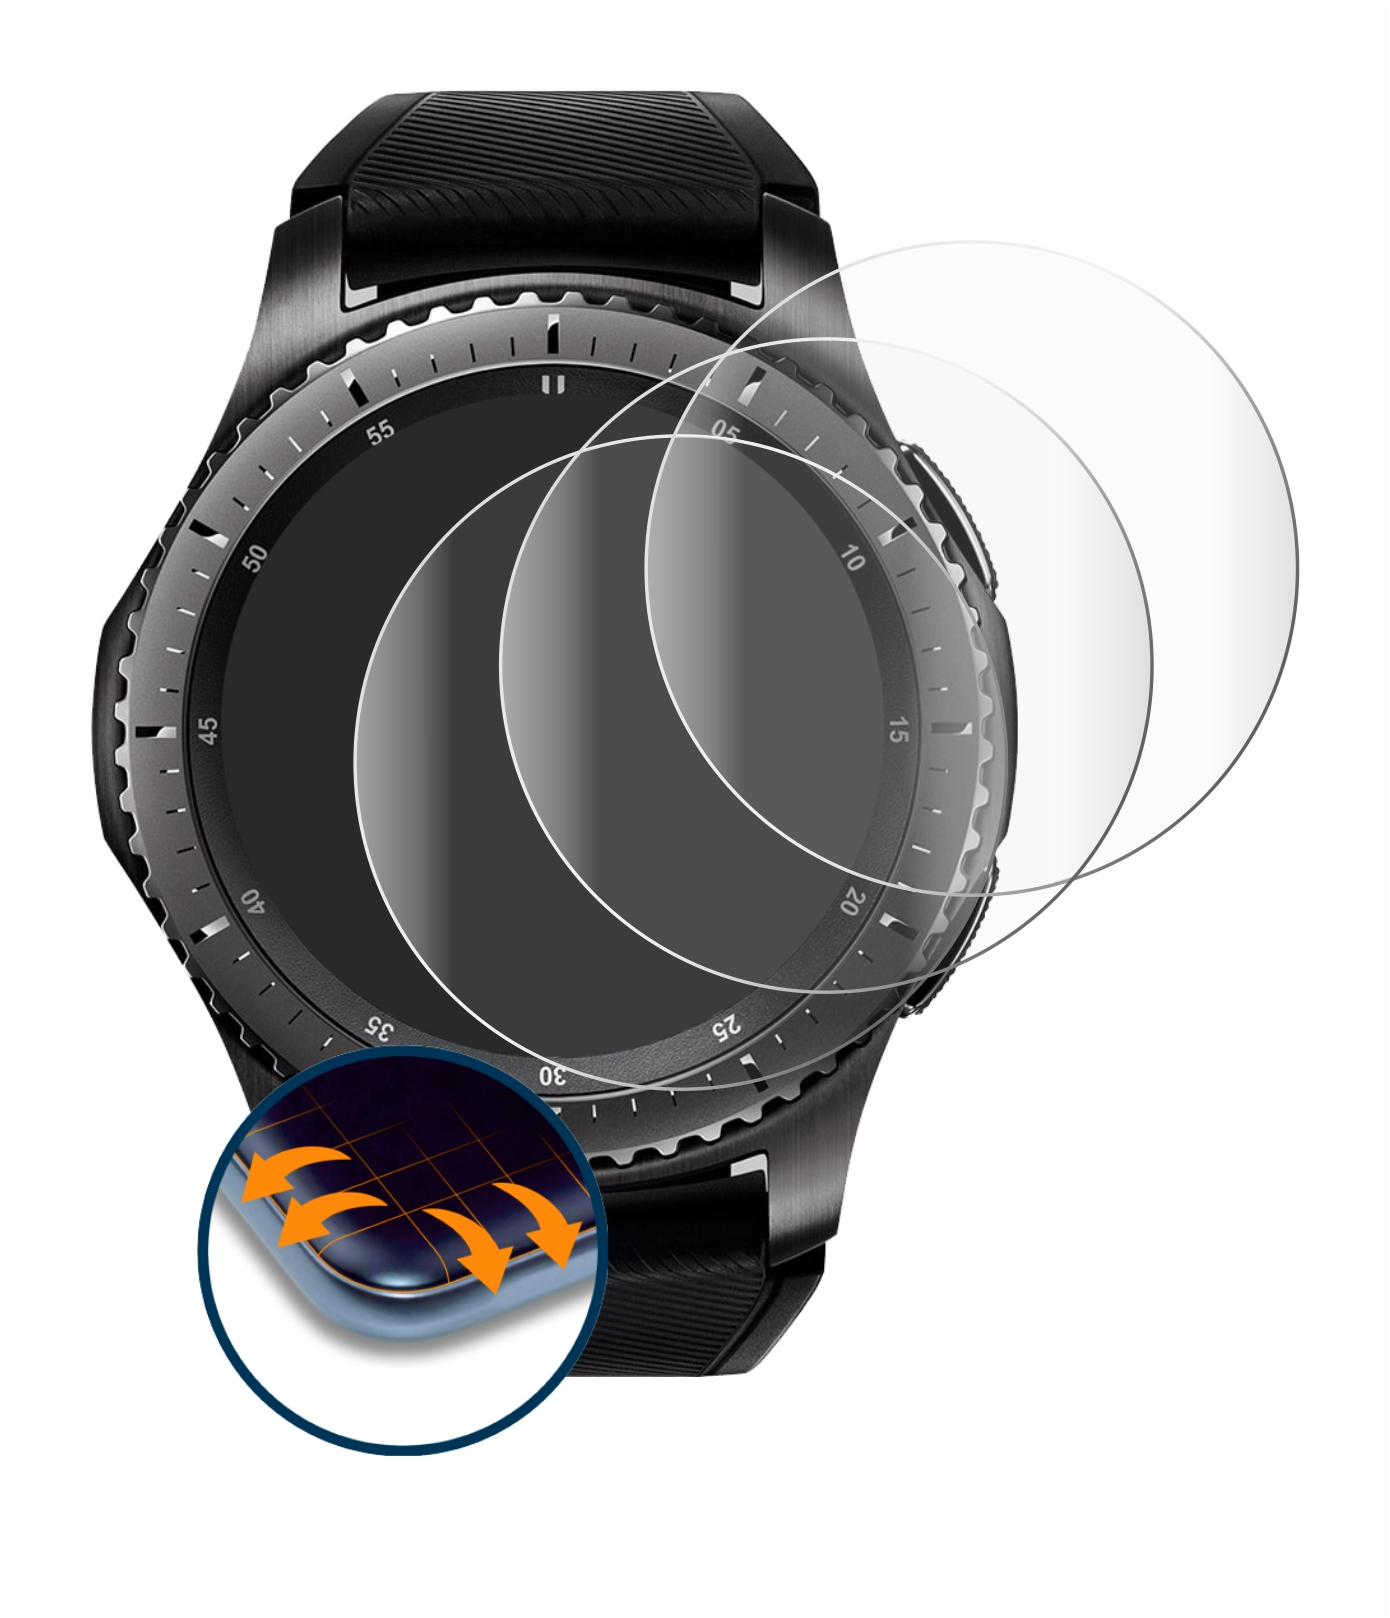 SAVVIES 4x Flex Full-Cover Curved Samsung 3D Schutzfolie(für S3 Gear Frontier)